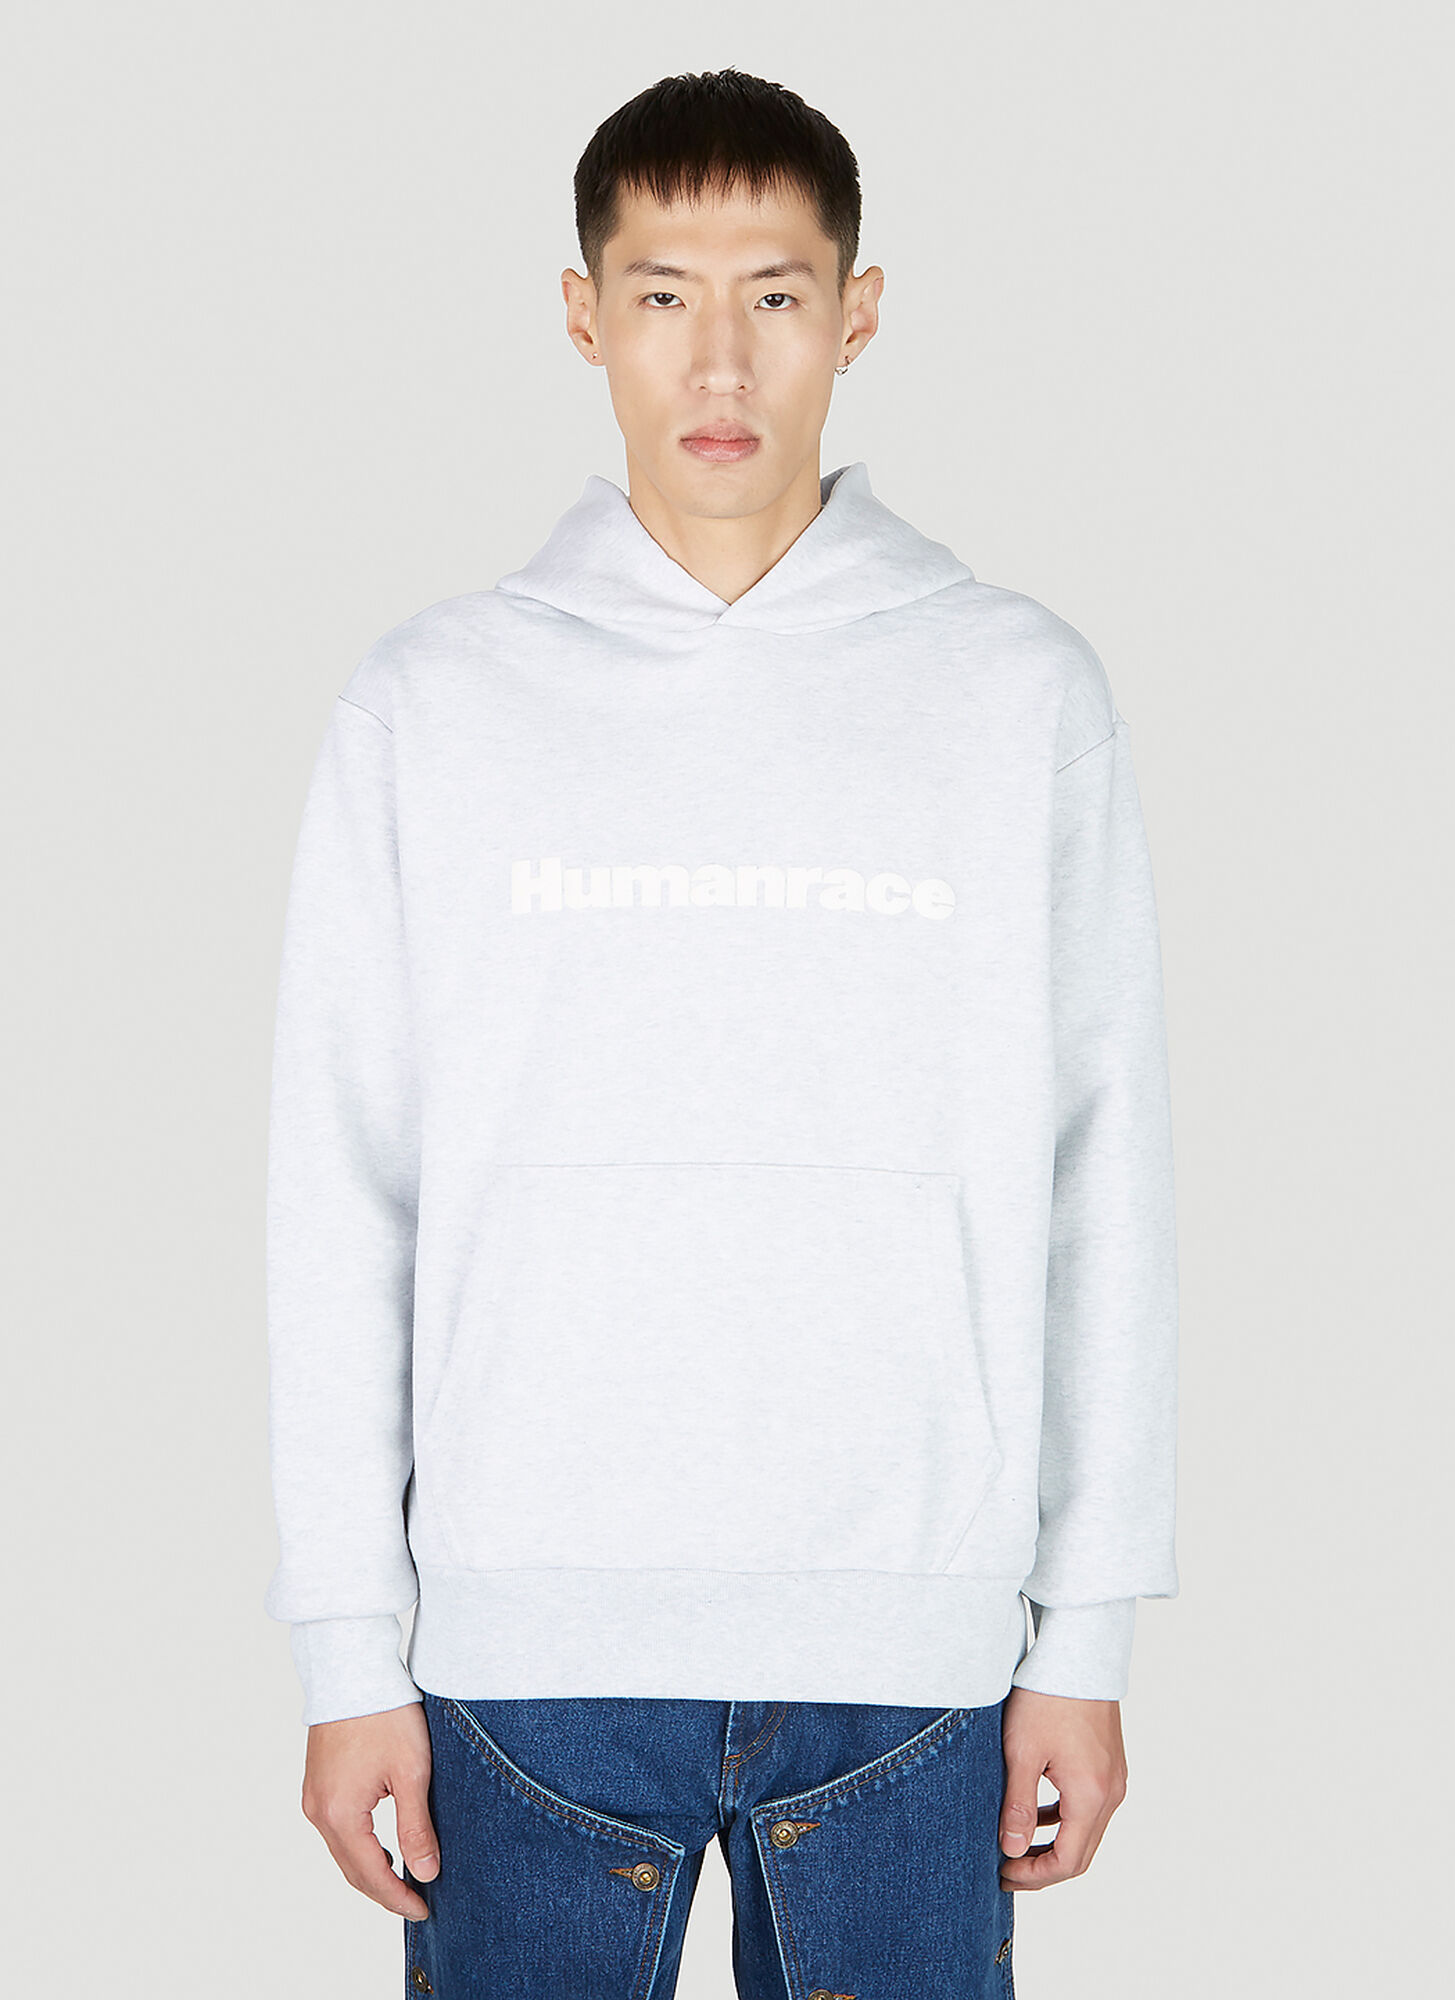 Adidas X Humanrace Basics Hooded Sweatshirt In Grey